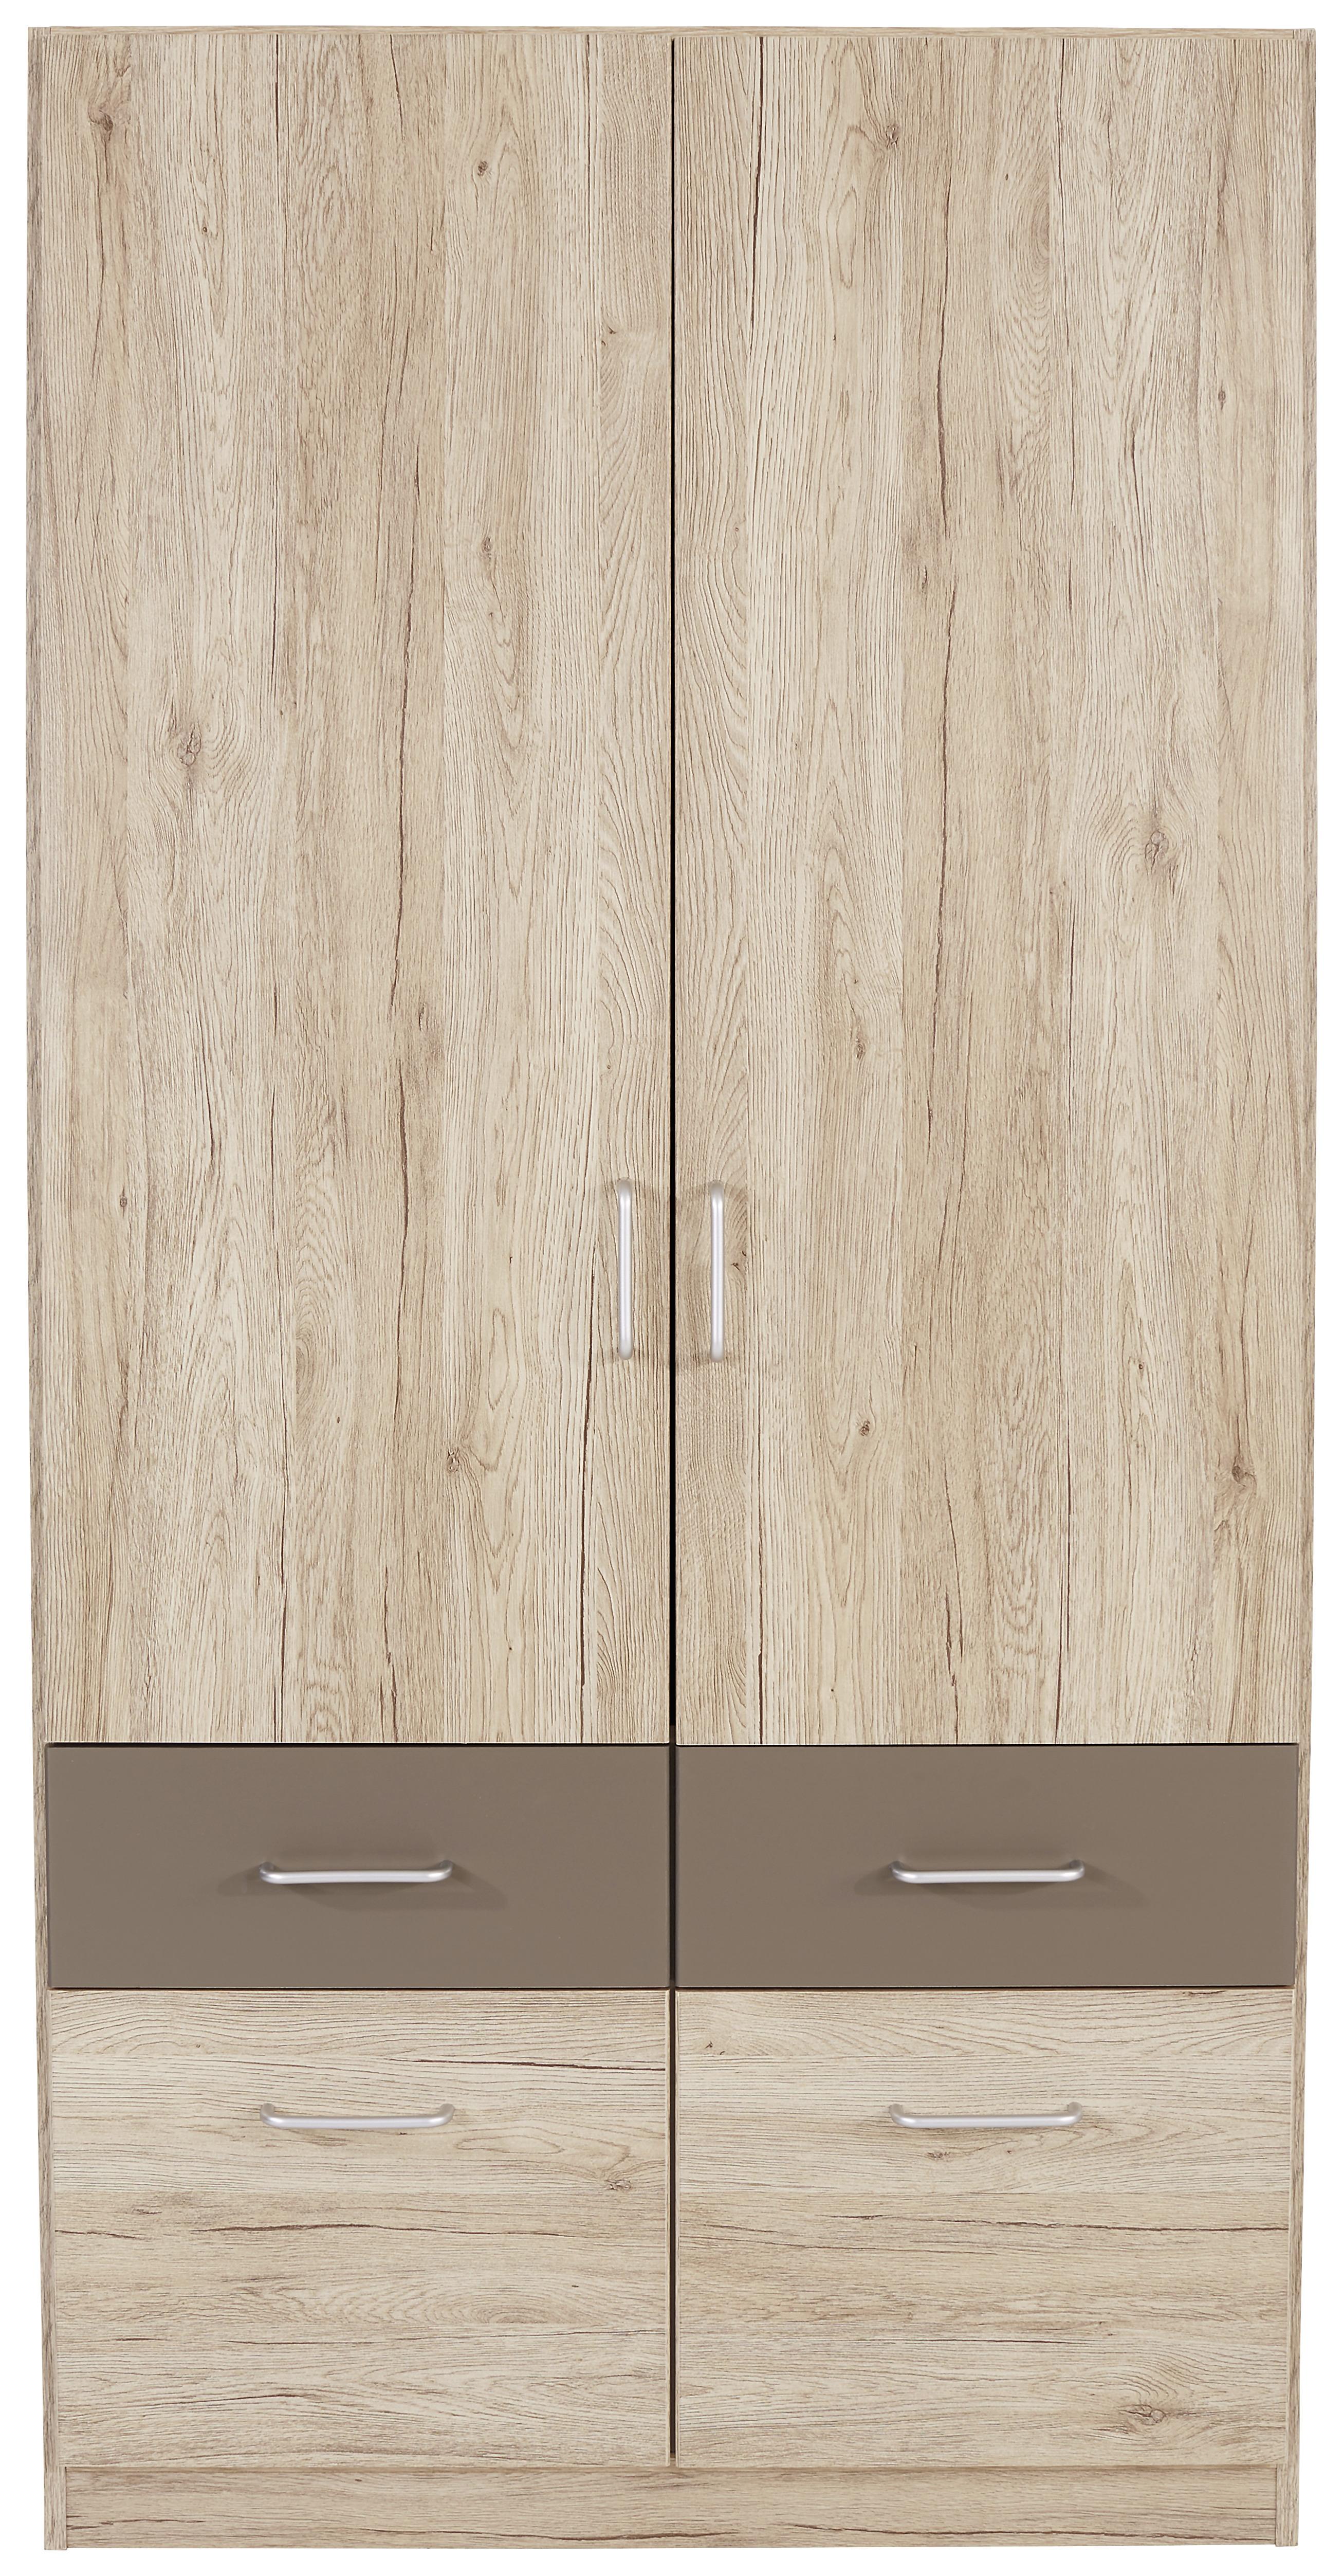 Dulap de haine Aalen - culoare lemn stejar/gri, Konventionell, material pe bază de lemn (91/197/54cm)